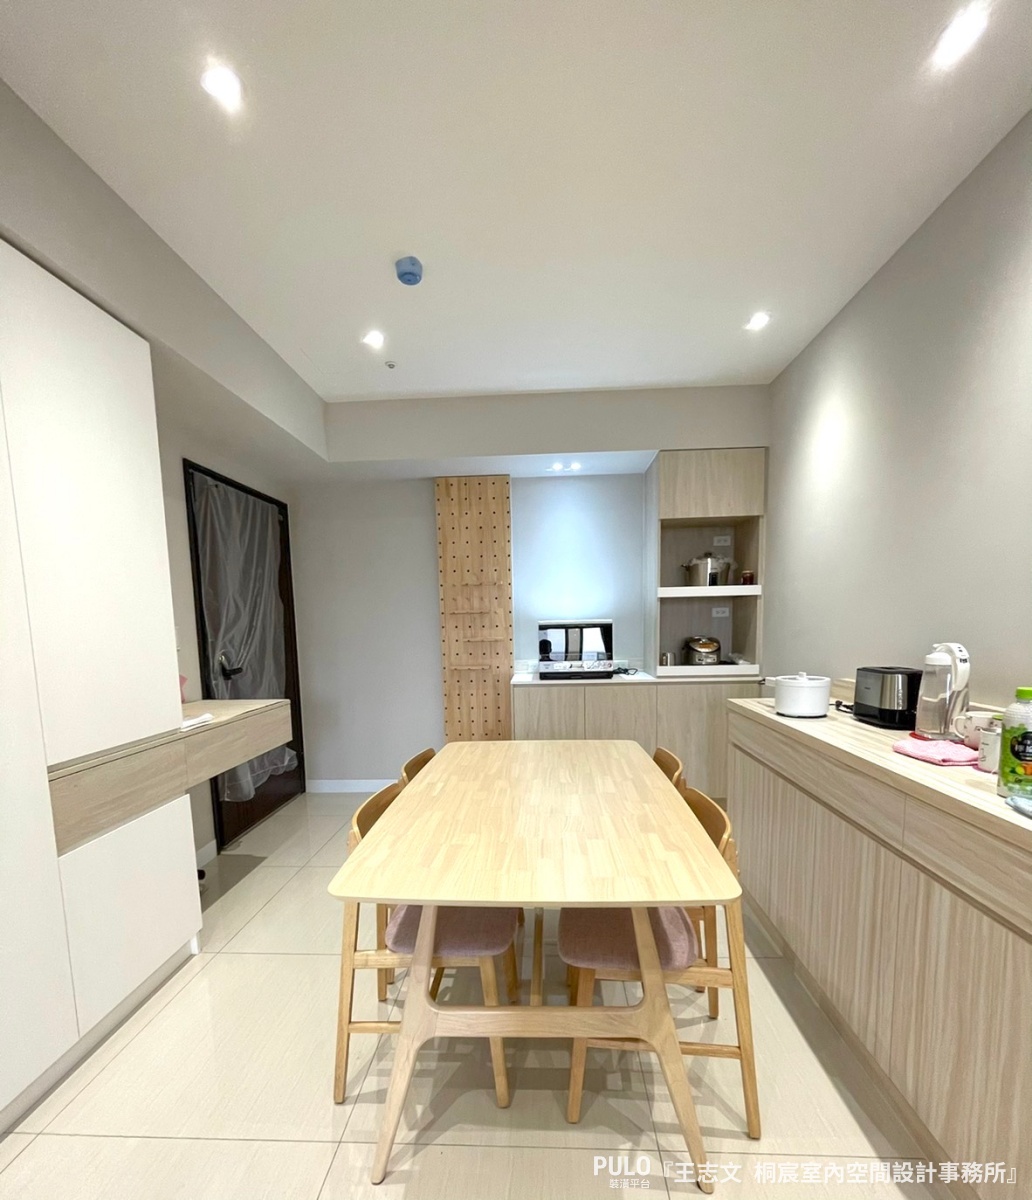 EGGER木地板變換空間氛圍，新北2房2廳裝潢案例開箱 - PULO裝潢平台